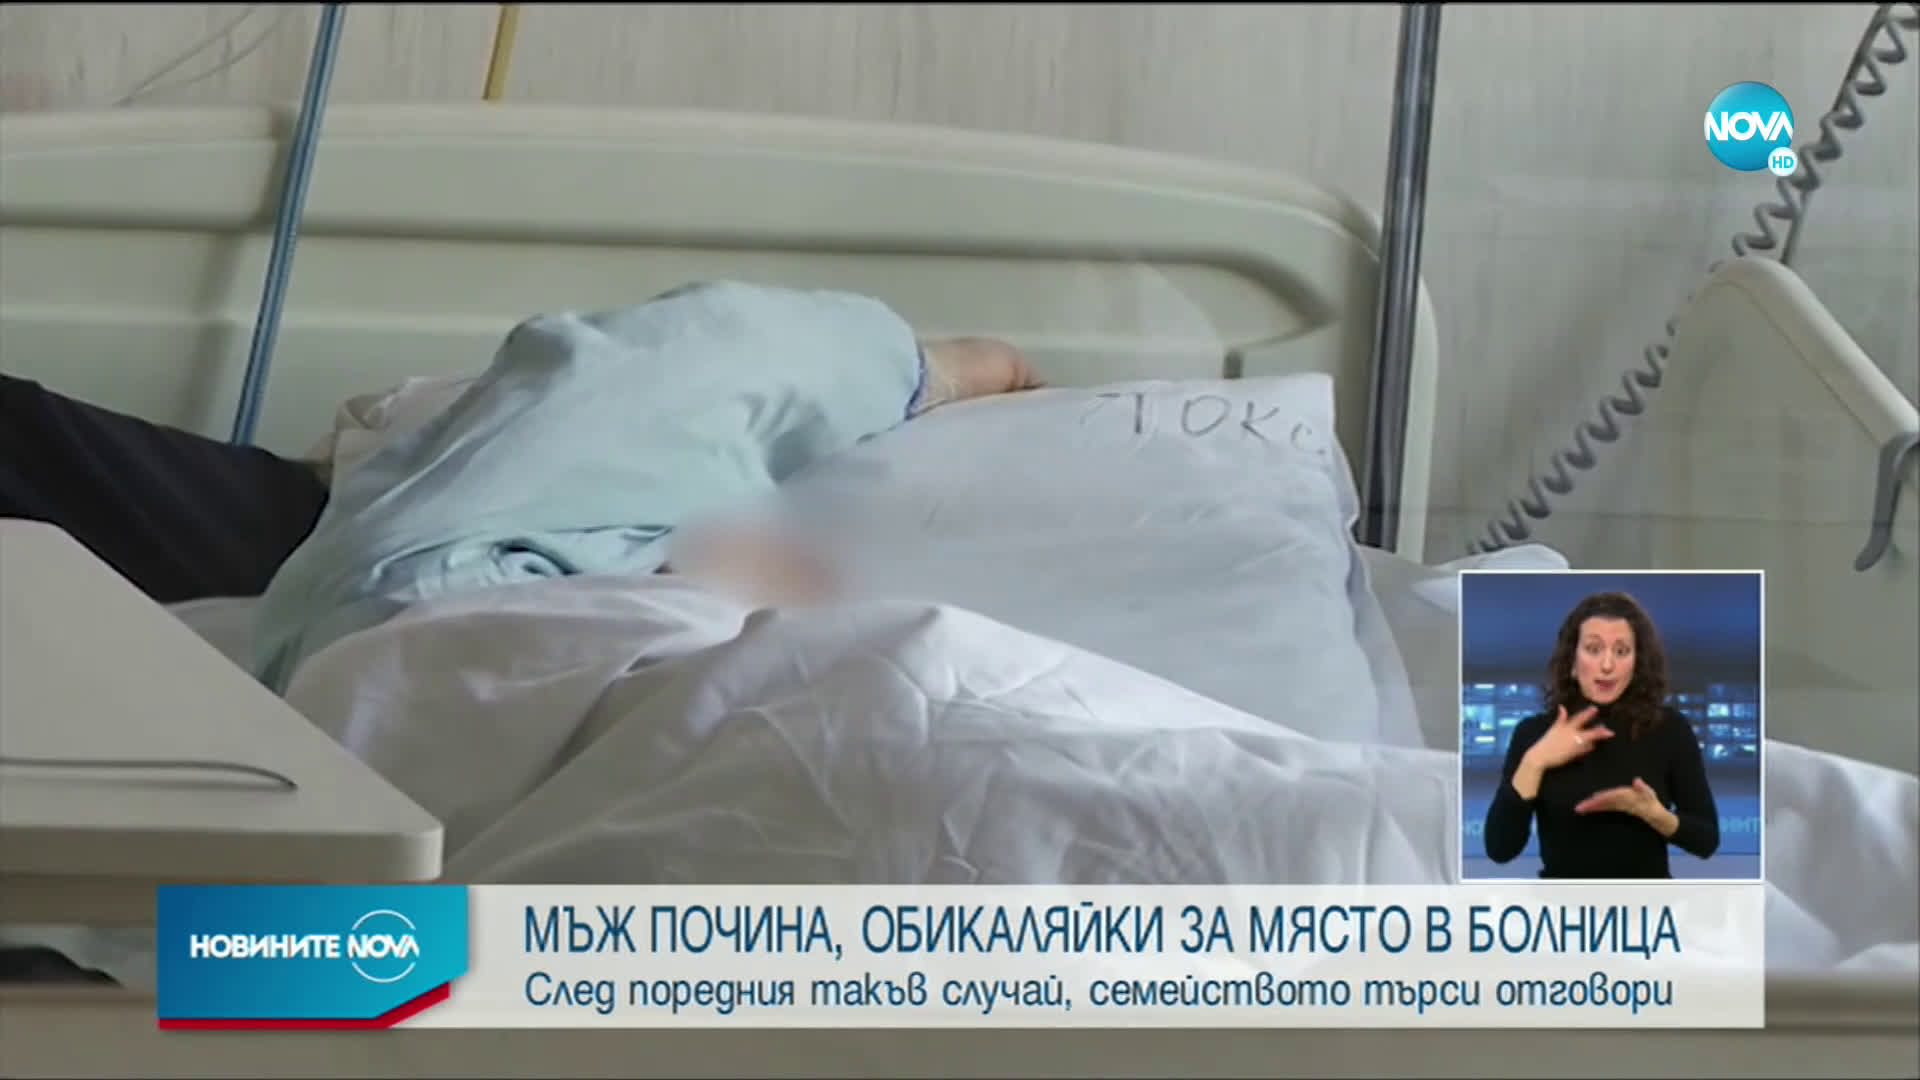 Още един пациент почина в Пловдив след обикаляне по болници